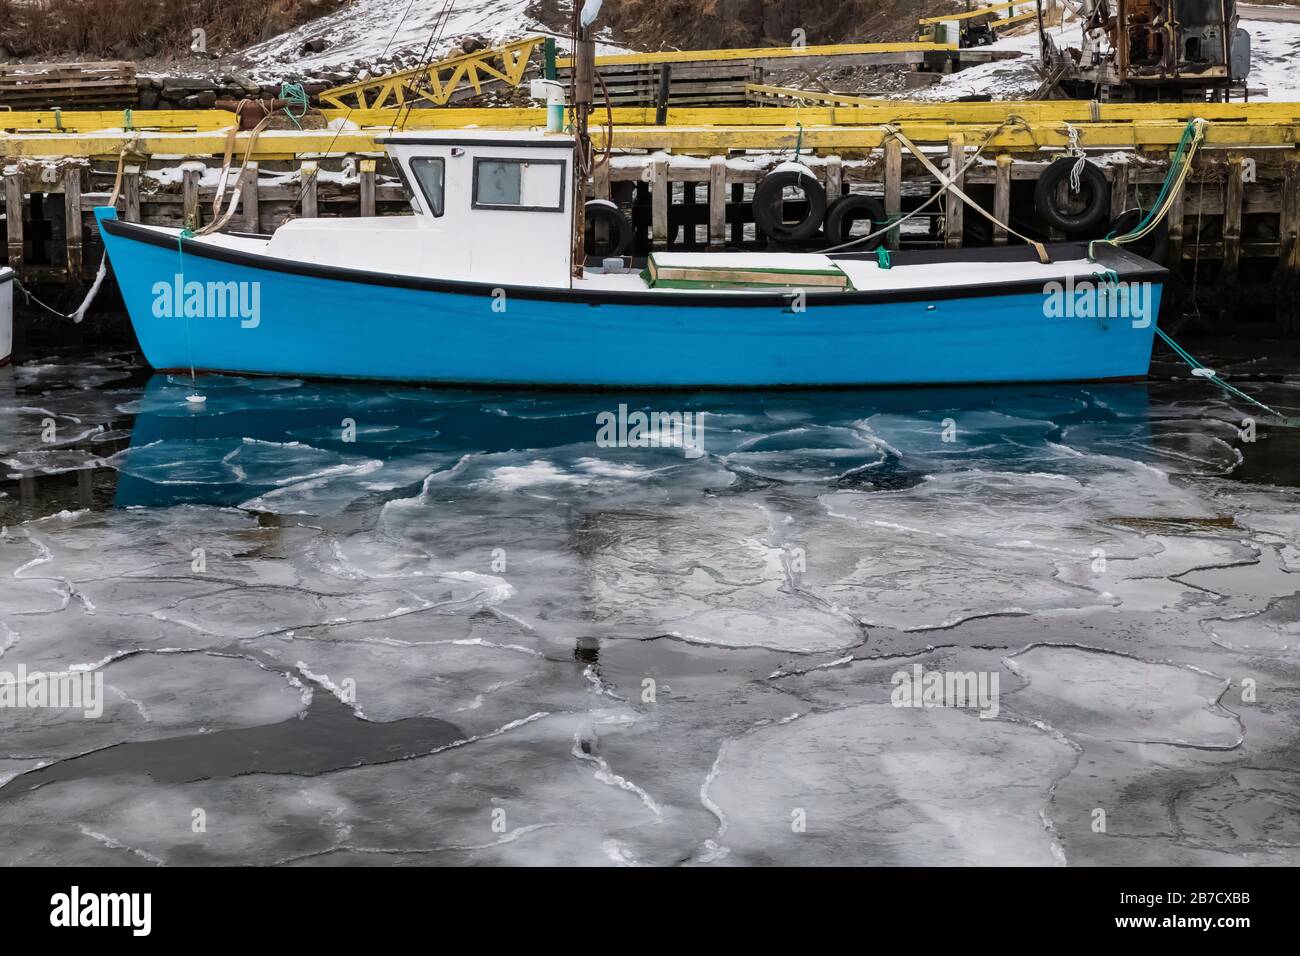 Glace de mer près de la rive sur une baie ouvrant sur l'océan Atlantique, avec un bateau de pêche, à Terre-Neuve, au Canada Banque D'Images